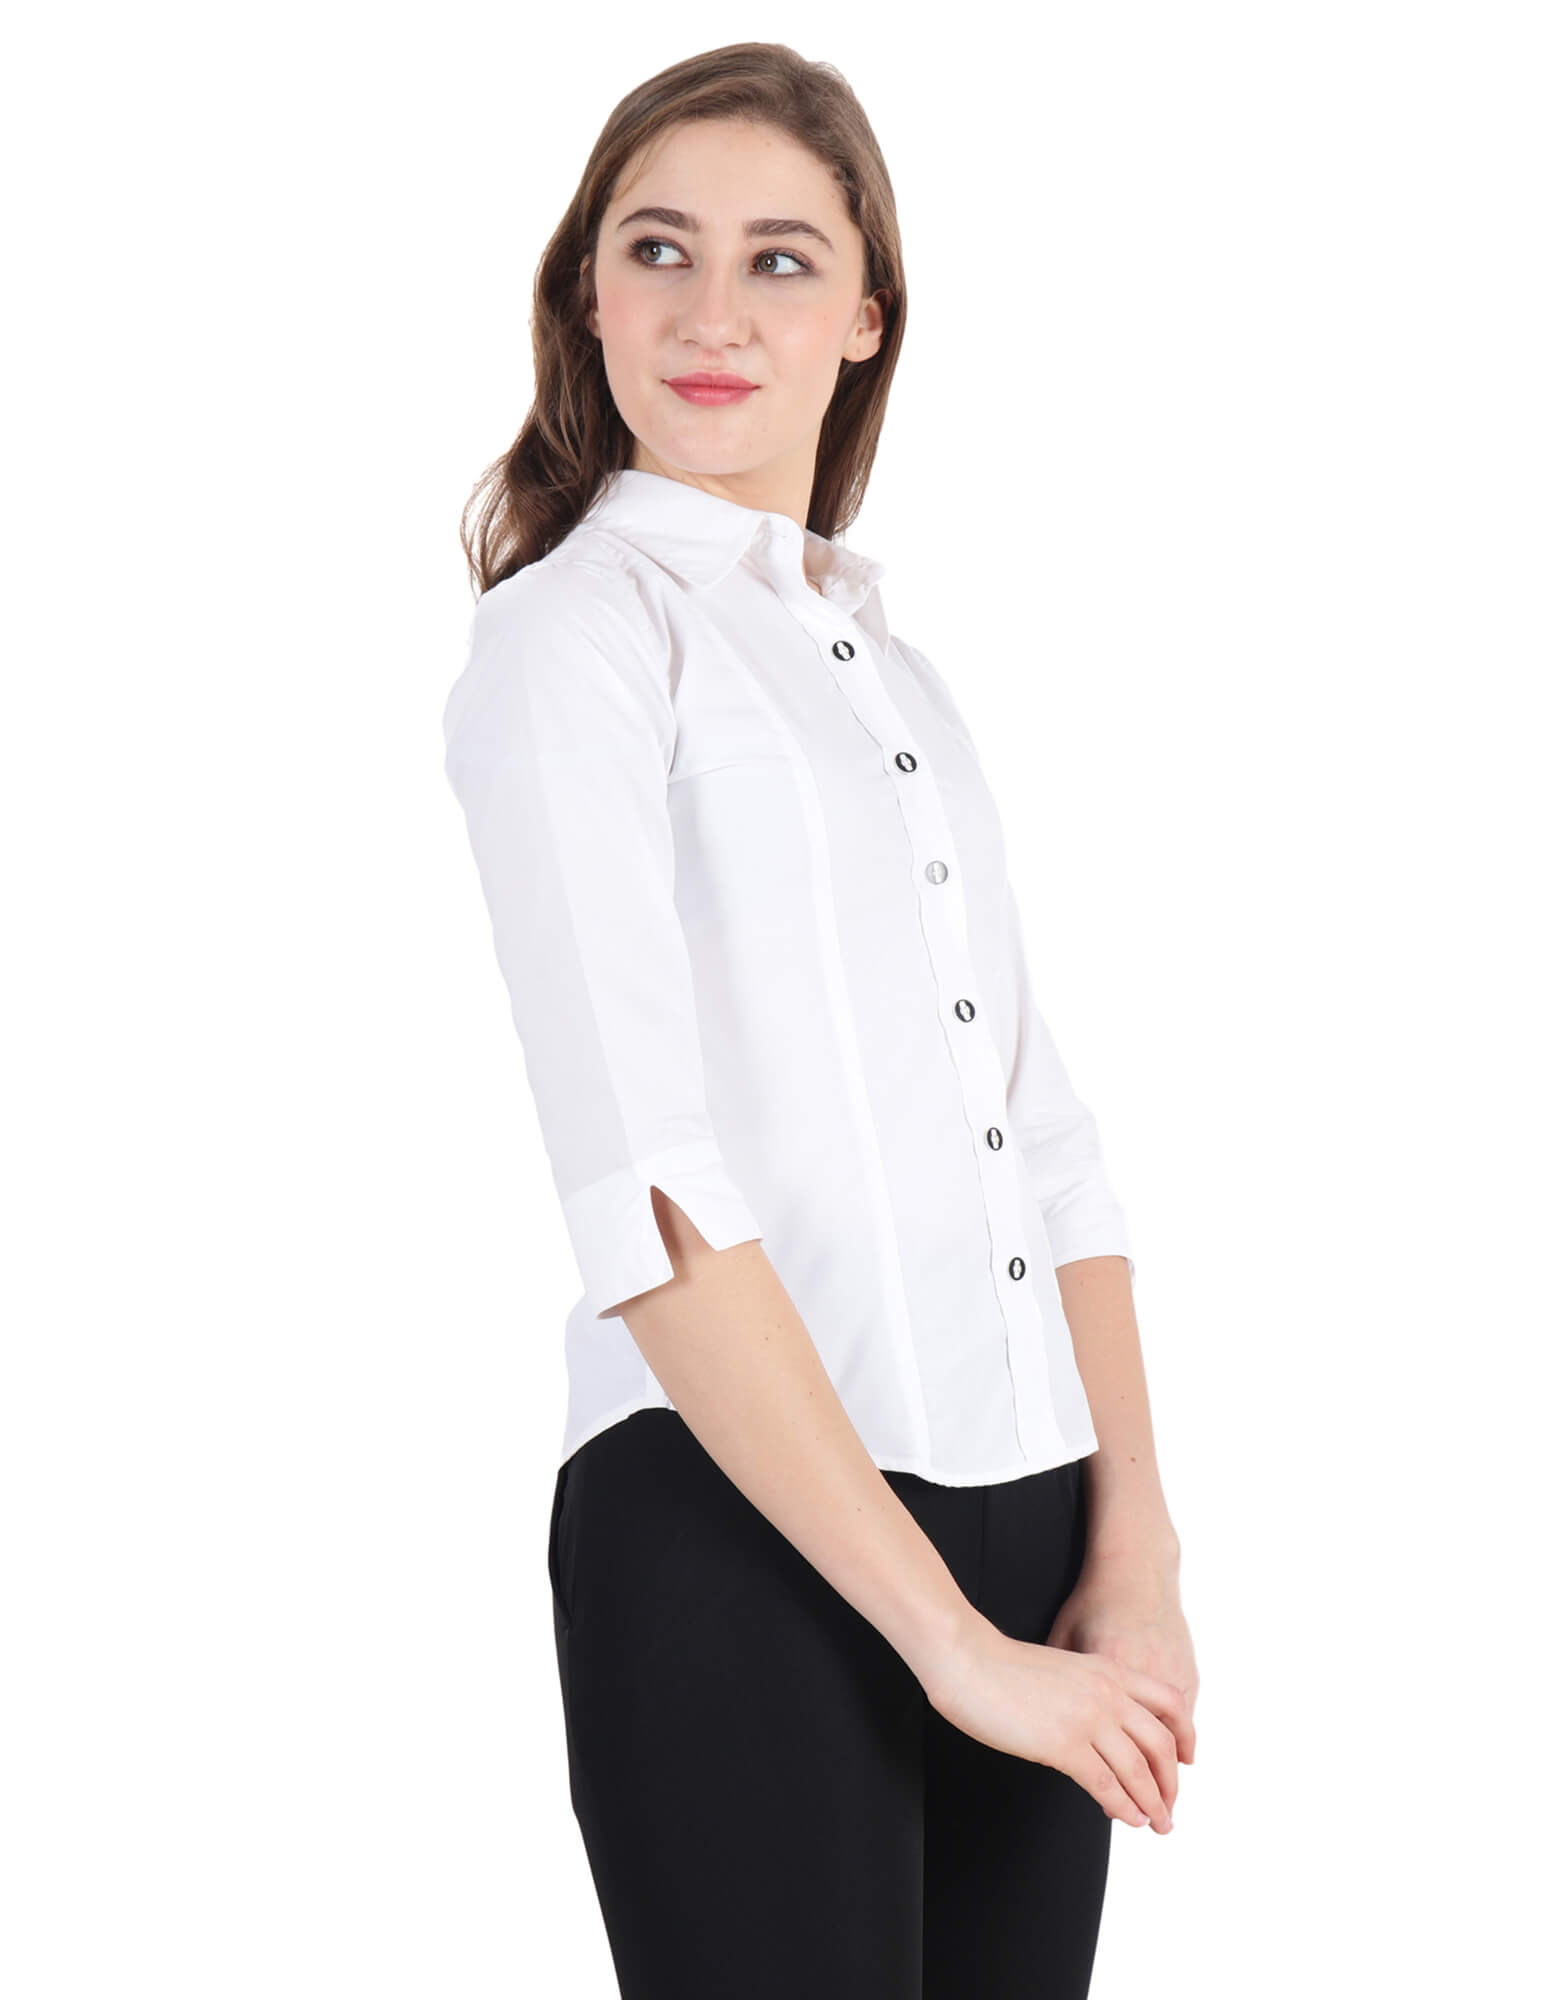 white formal shirt female